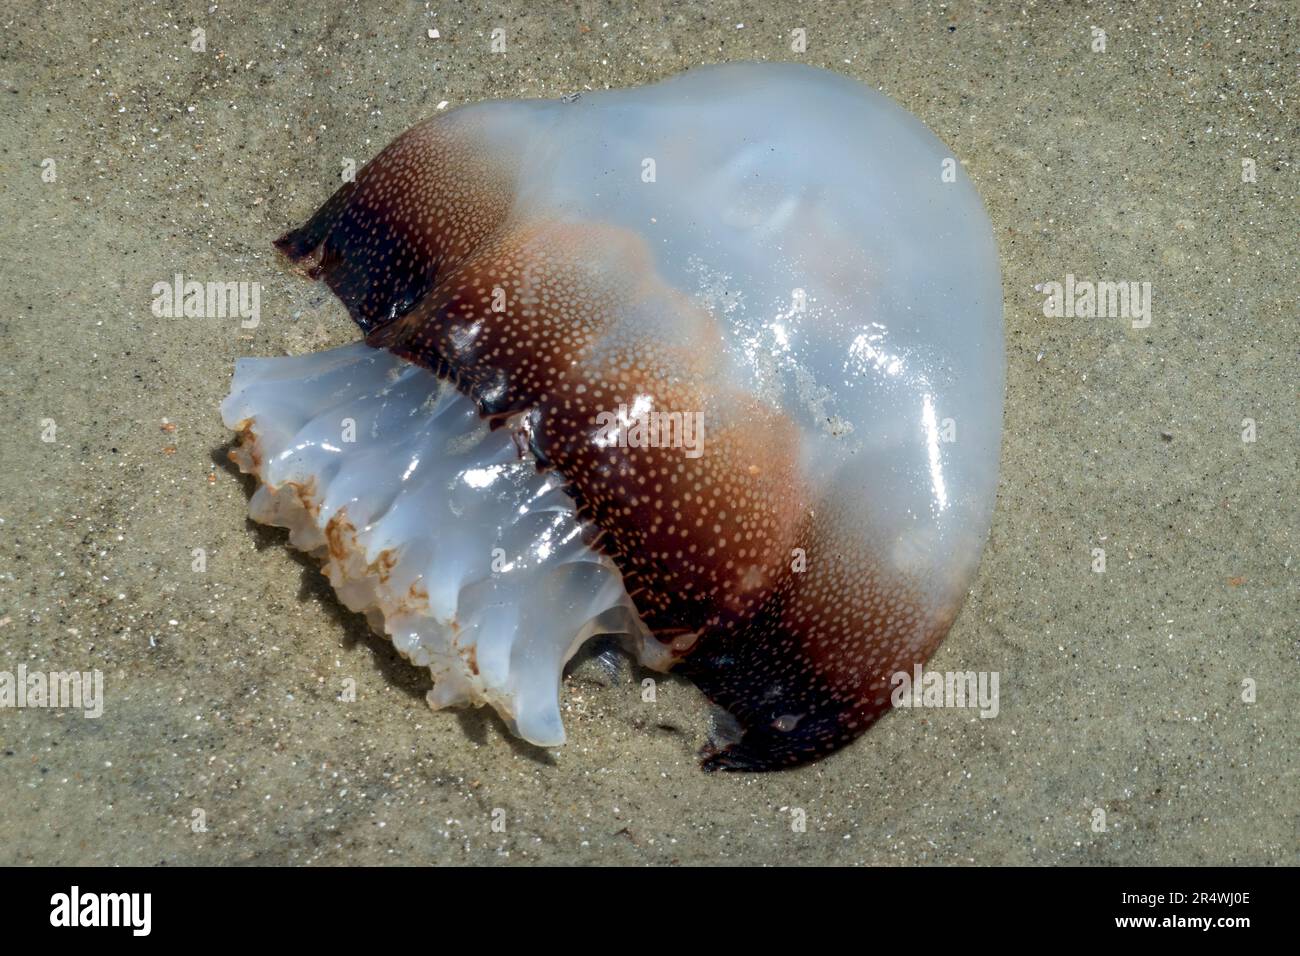 Cannonball Quallen, Stomolophus meleagris, auch bekannt als Cabbagehead, wurde am Strand von Hilton Head Island angespült. Stockfoto